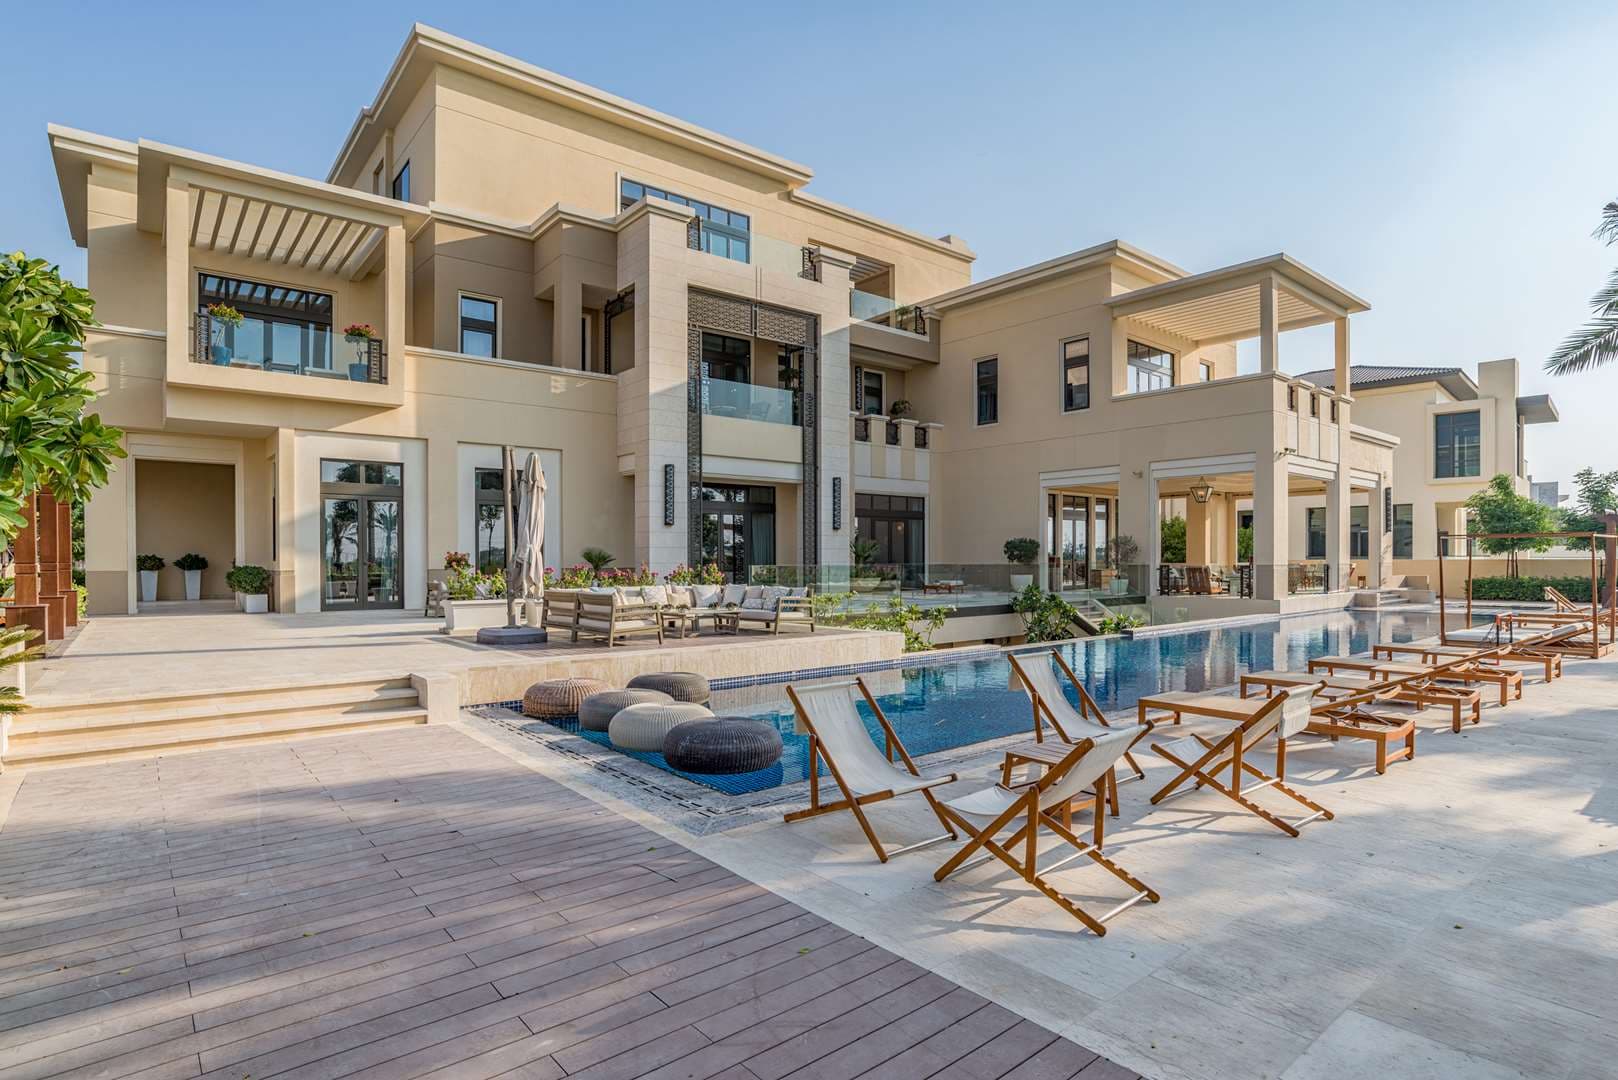 Villa For Sale Dubai Hills Mansions Lp0418 11197211d0be3600.jpg